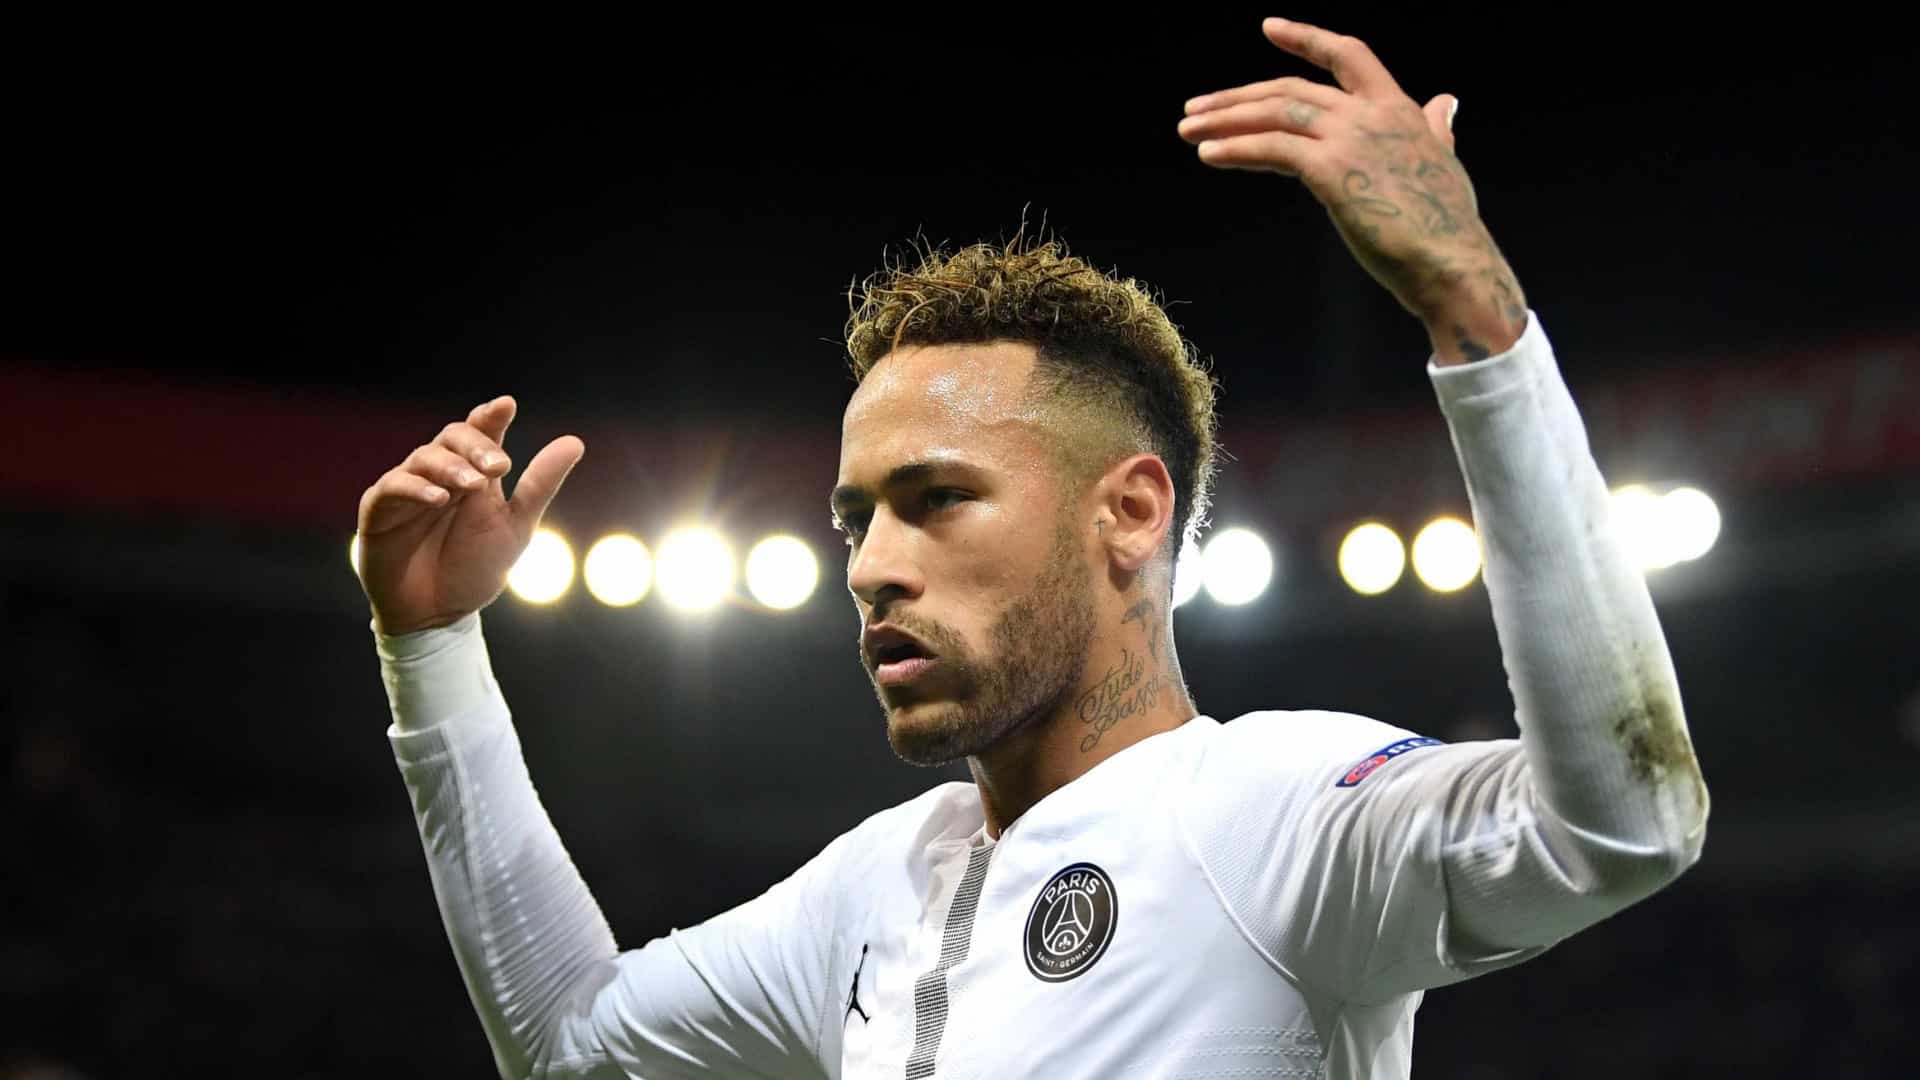 Uefa define candidatos a ‘seleção do ano’ sem Neymar